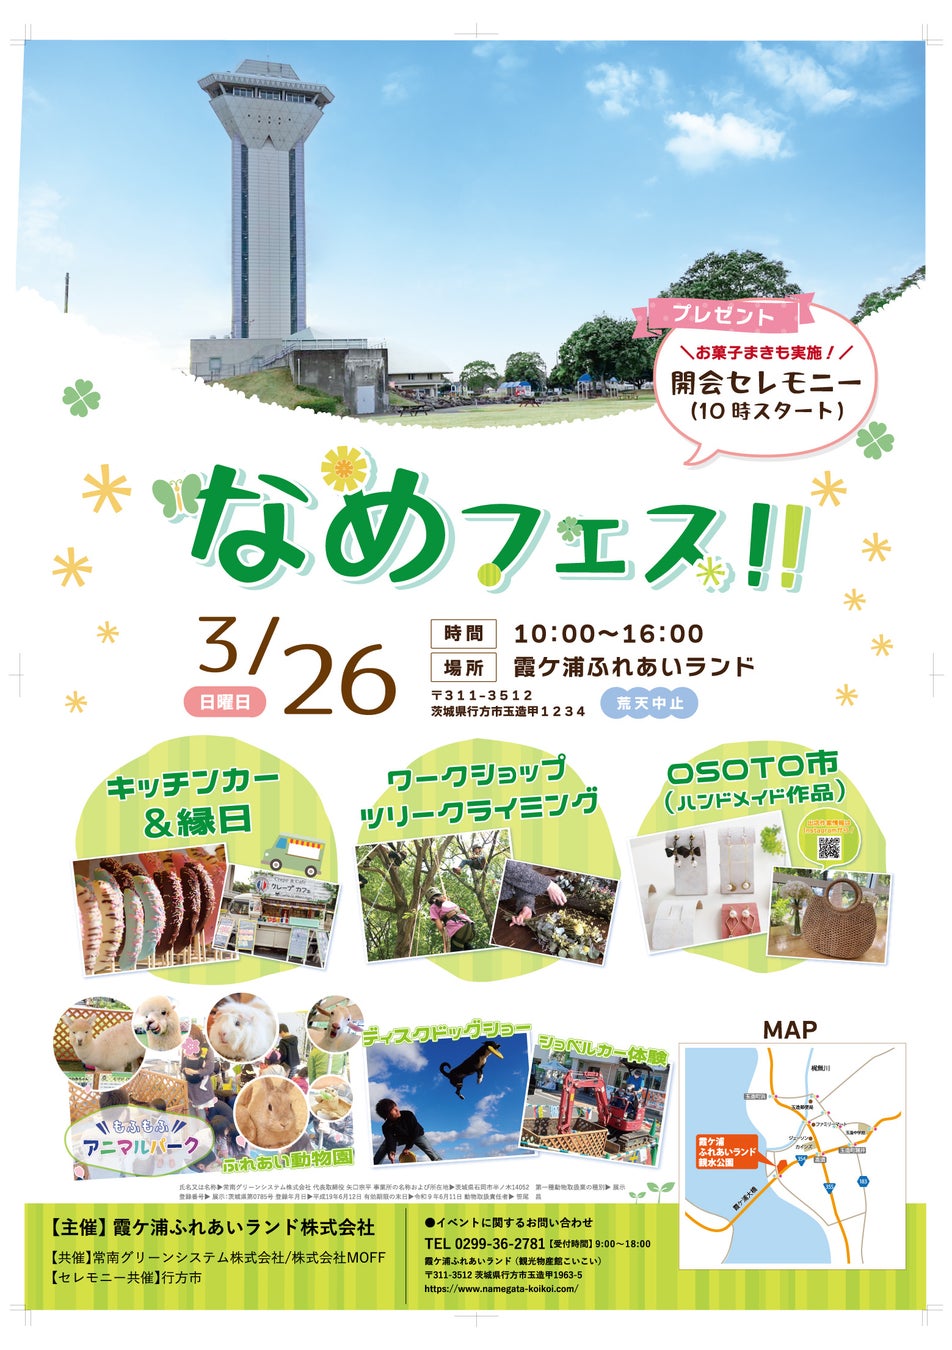 春の京都でお茶の愉しみを知る！
煎茶道東阿部流の体験教室「雅翠庵」が
北野天満宮そばにオープン　
4月15日(土)記念イベントを開催